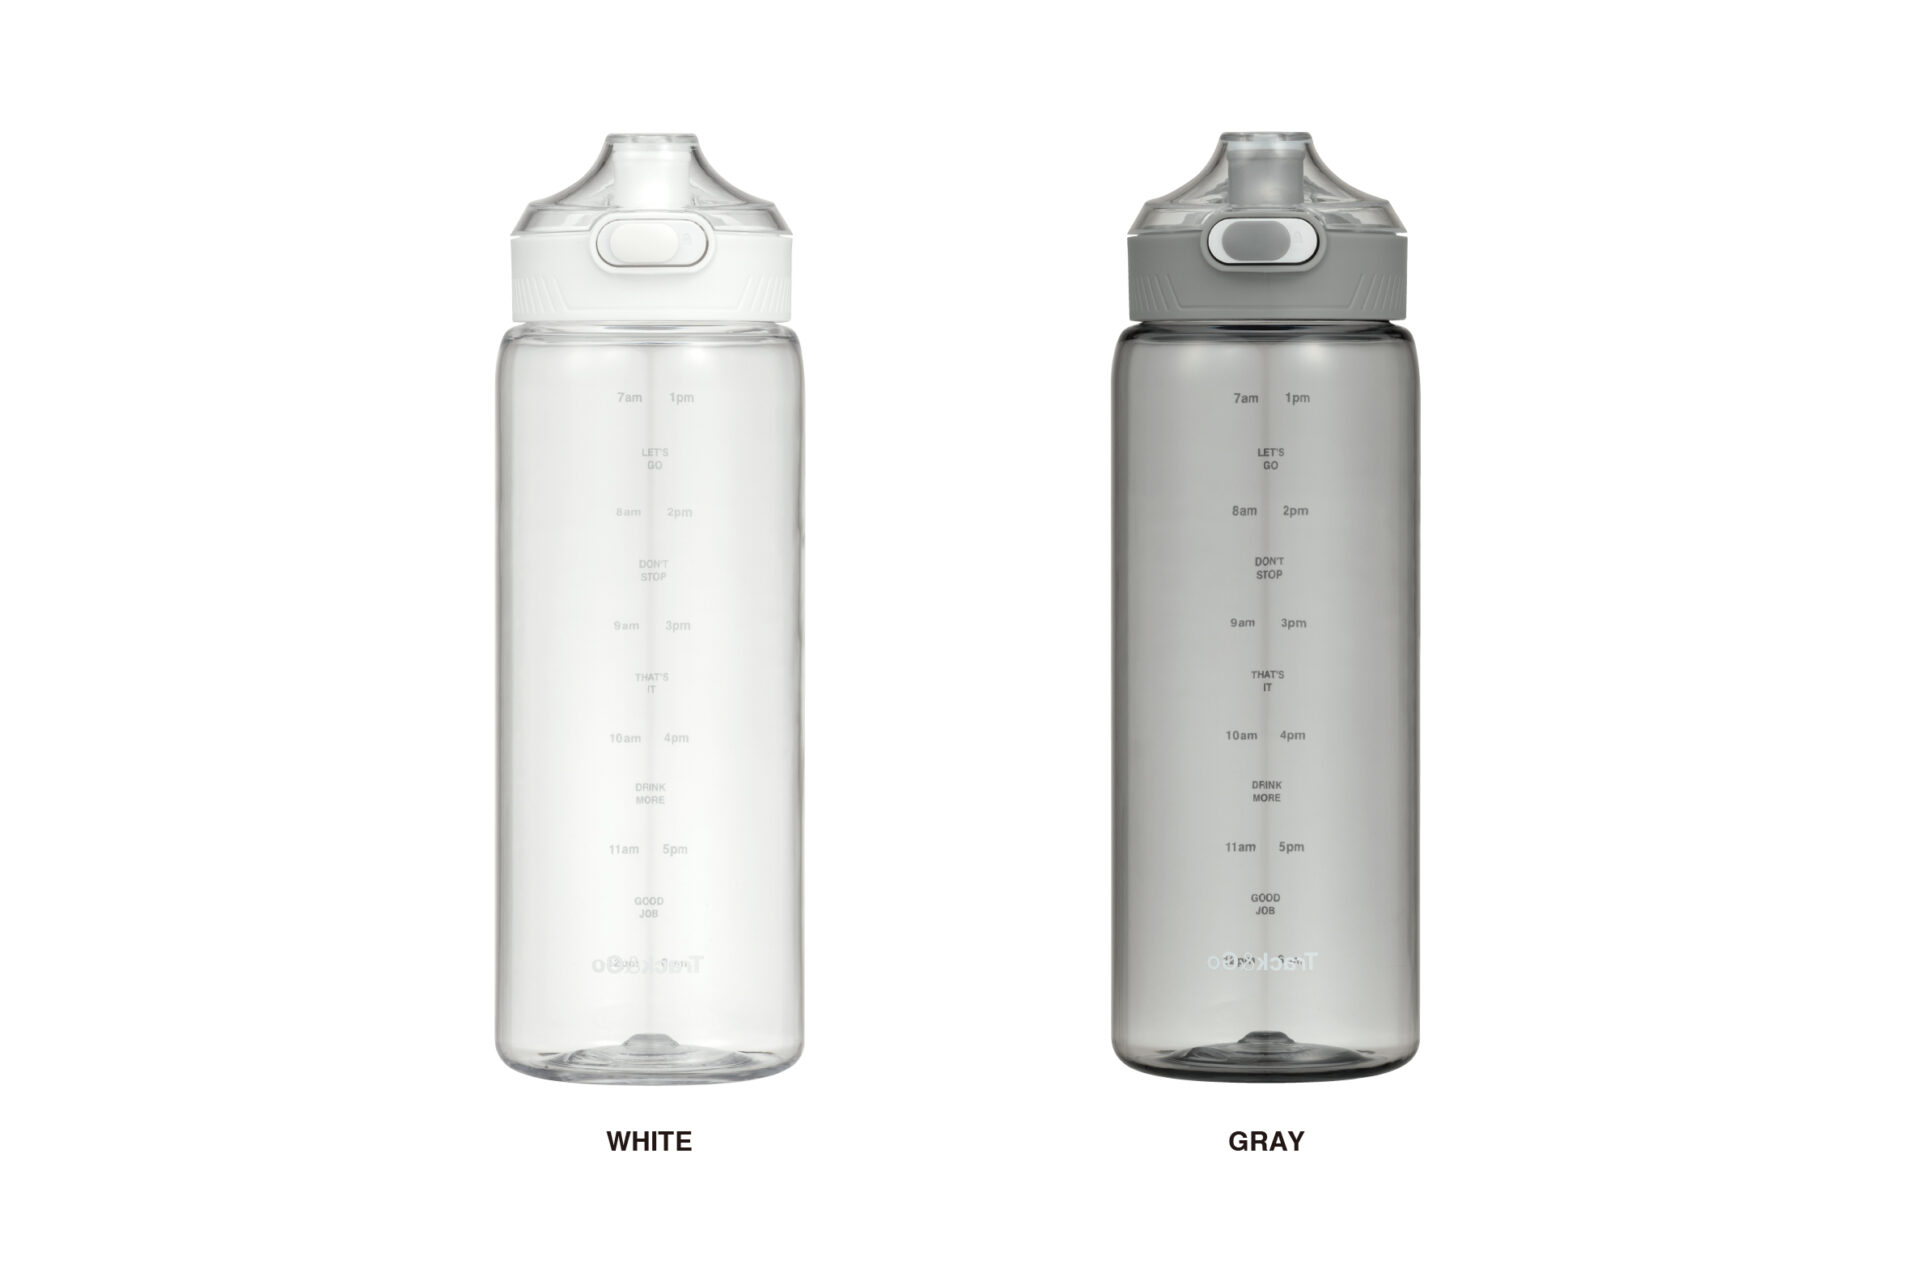 ボトルが2個並んでいる写真。左がホワイト、右がグレー、どちらも透明です